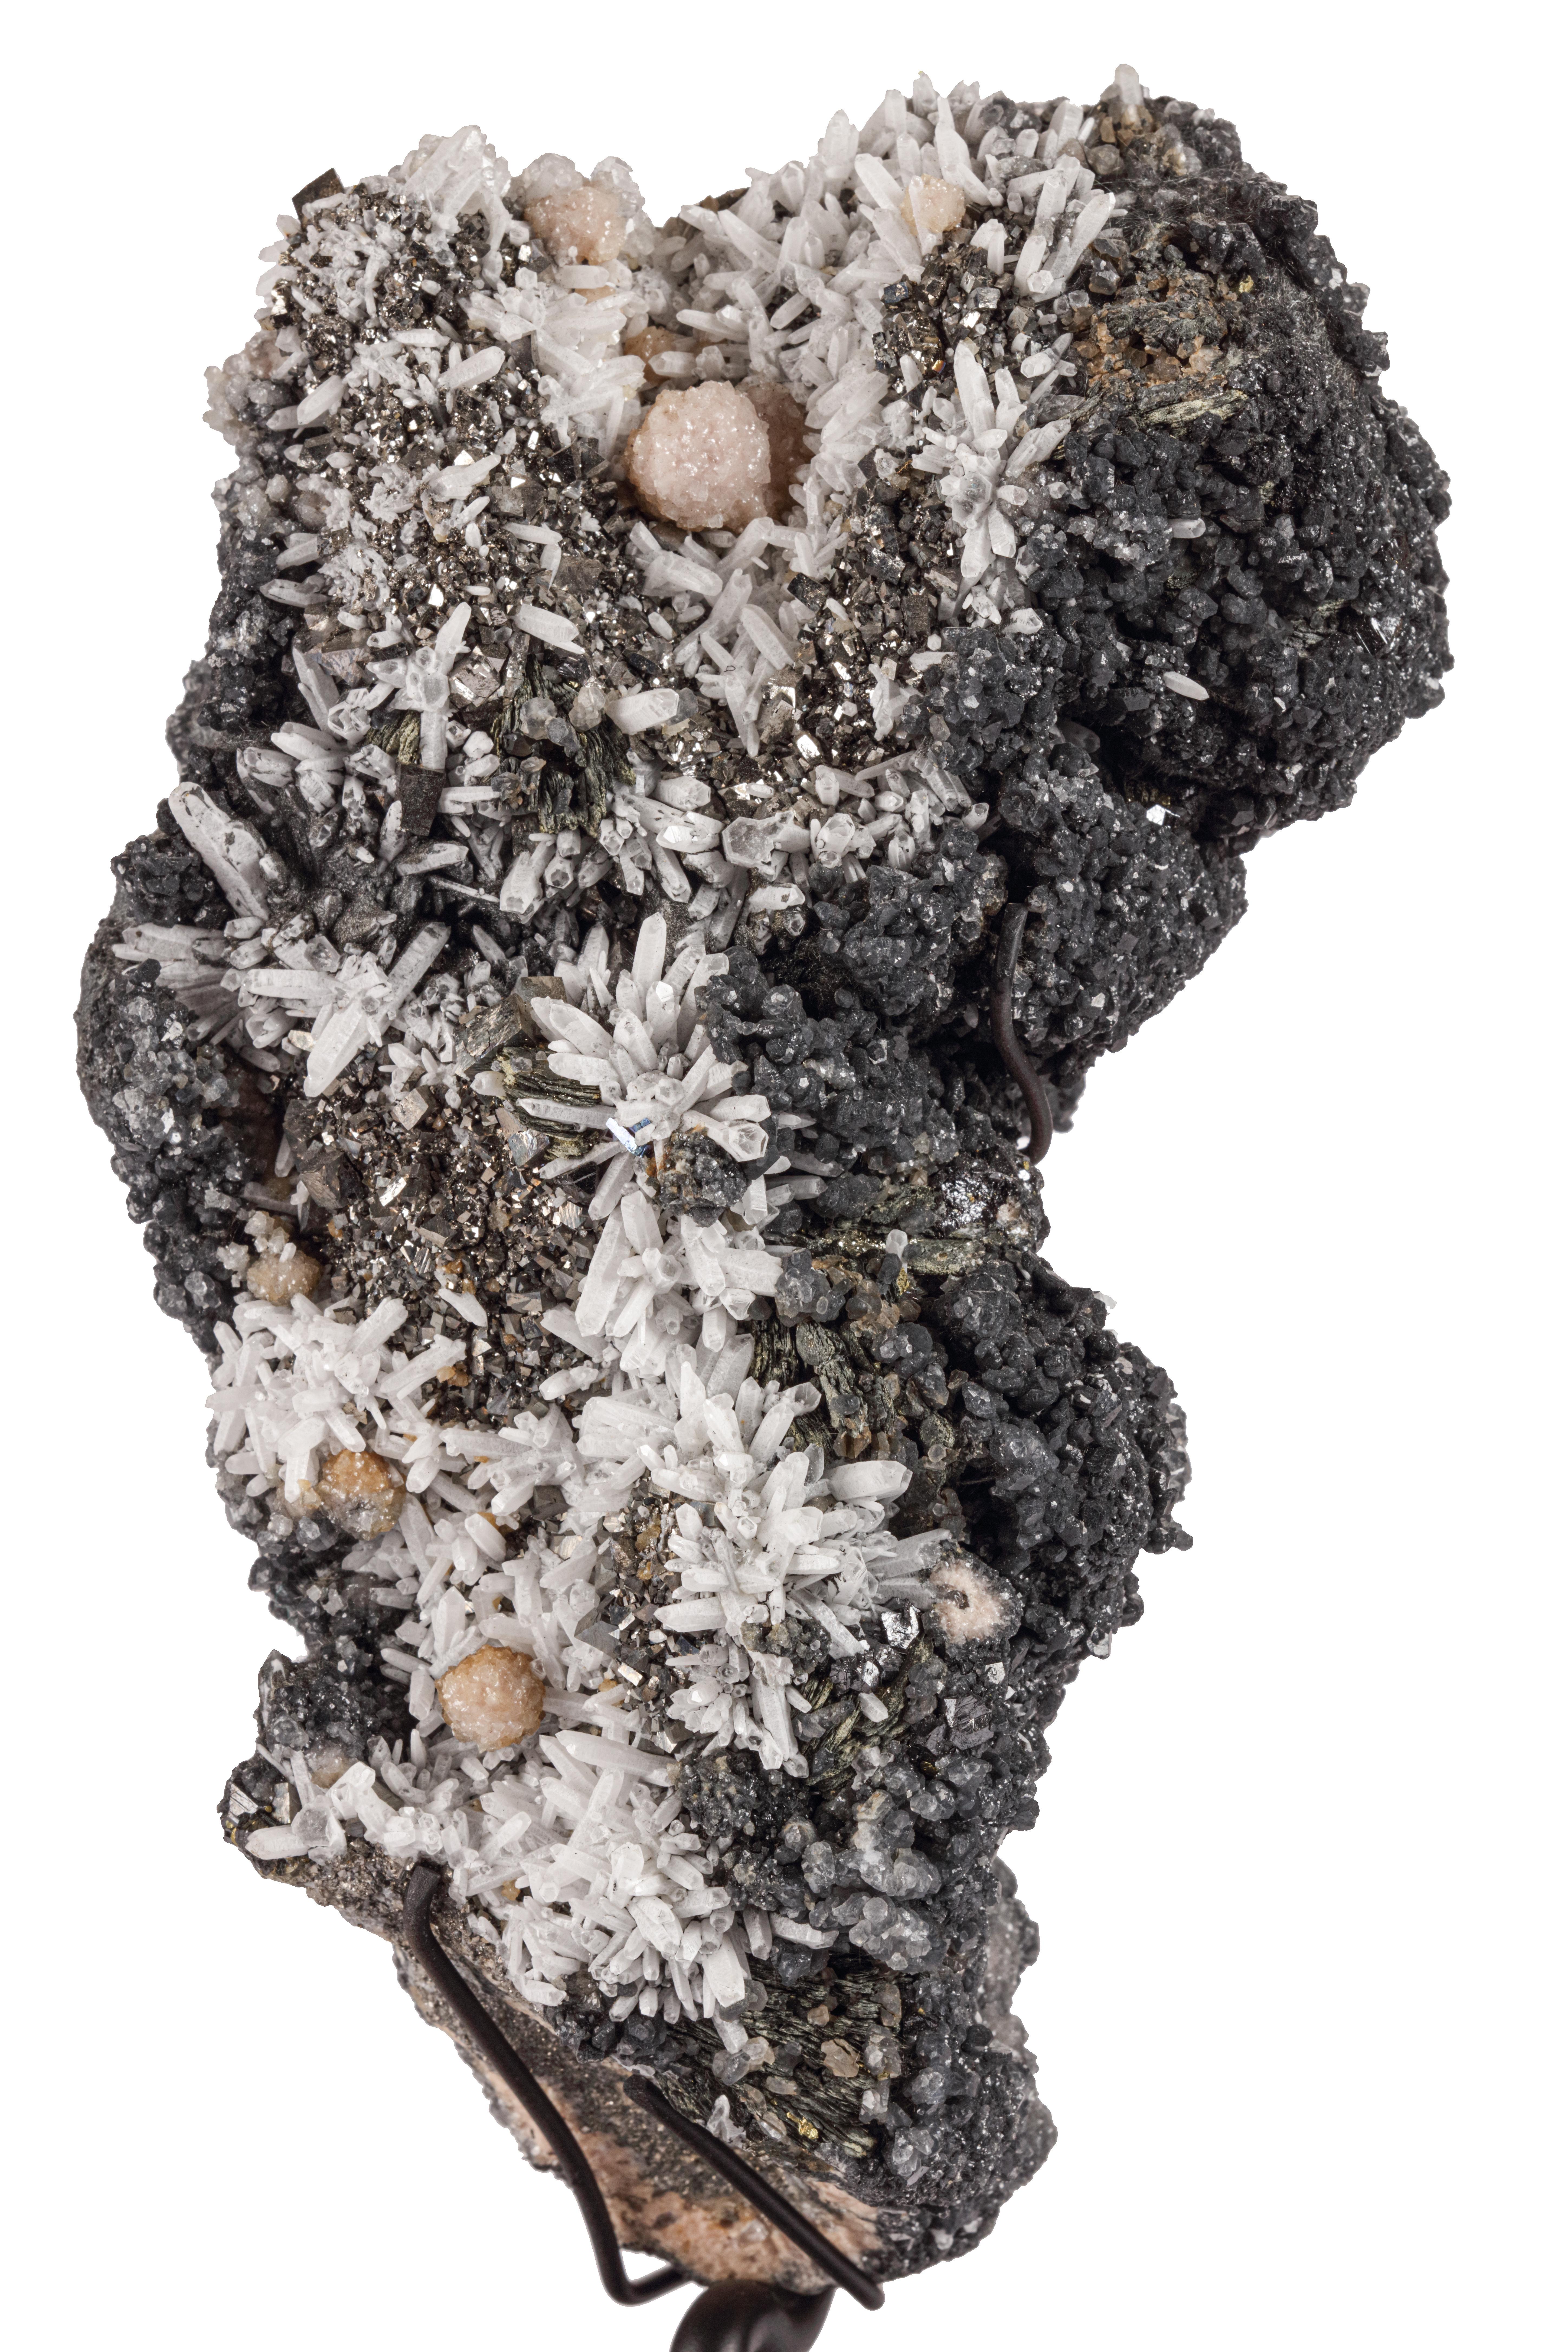 Eine Sammlung prächtiger Mineralien, die von der Natur geformt wurden und an verschneite Berge erinnern
Alle gefunden in Trepca, Kosovo

 
Von links nach rechts:

Sphalerit, Bergkristall, Pyrit & Calcit

Maße: H. 16 x L. 36 x B. 26.